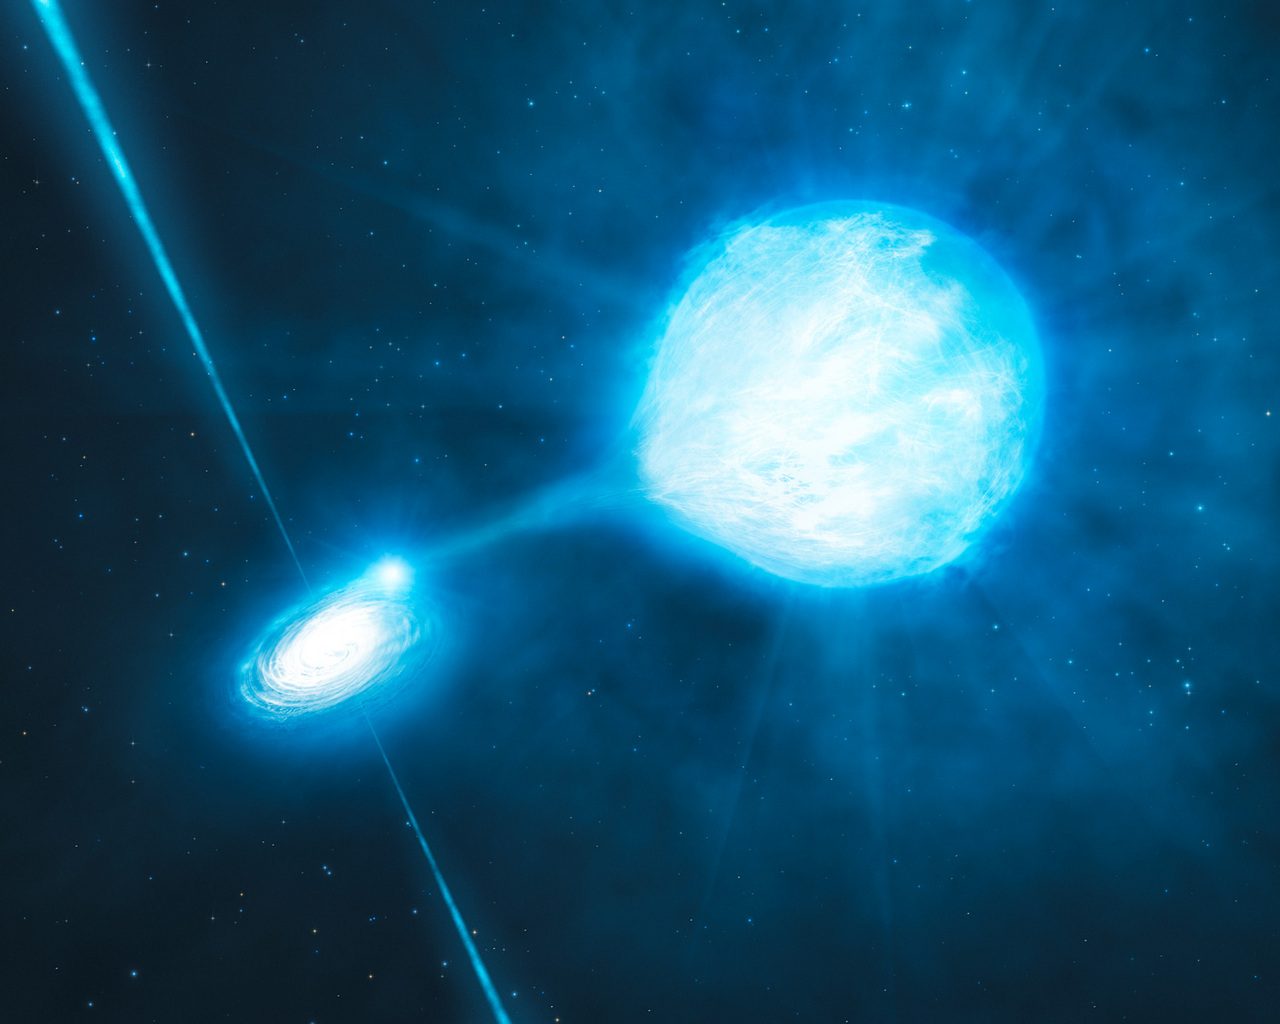 Un trou noir de l'étoile WR la plus ancienne extrait de la matière de sa voisine, la transformant en étoile Wolf-Rayet.